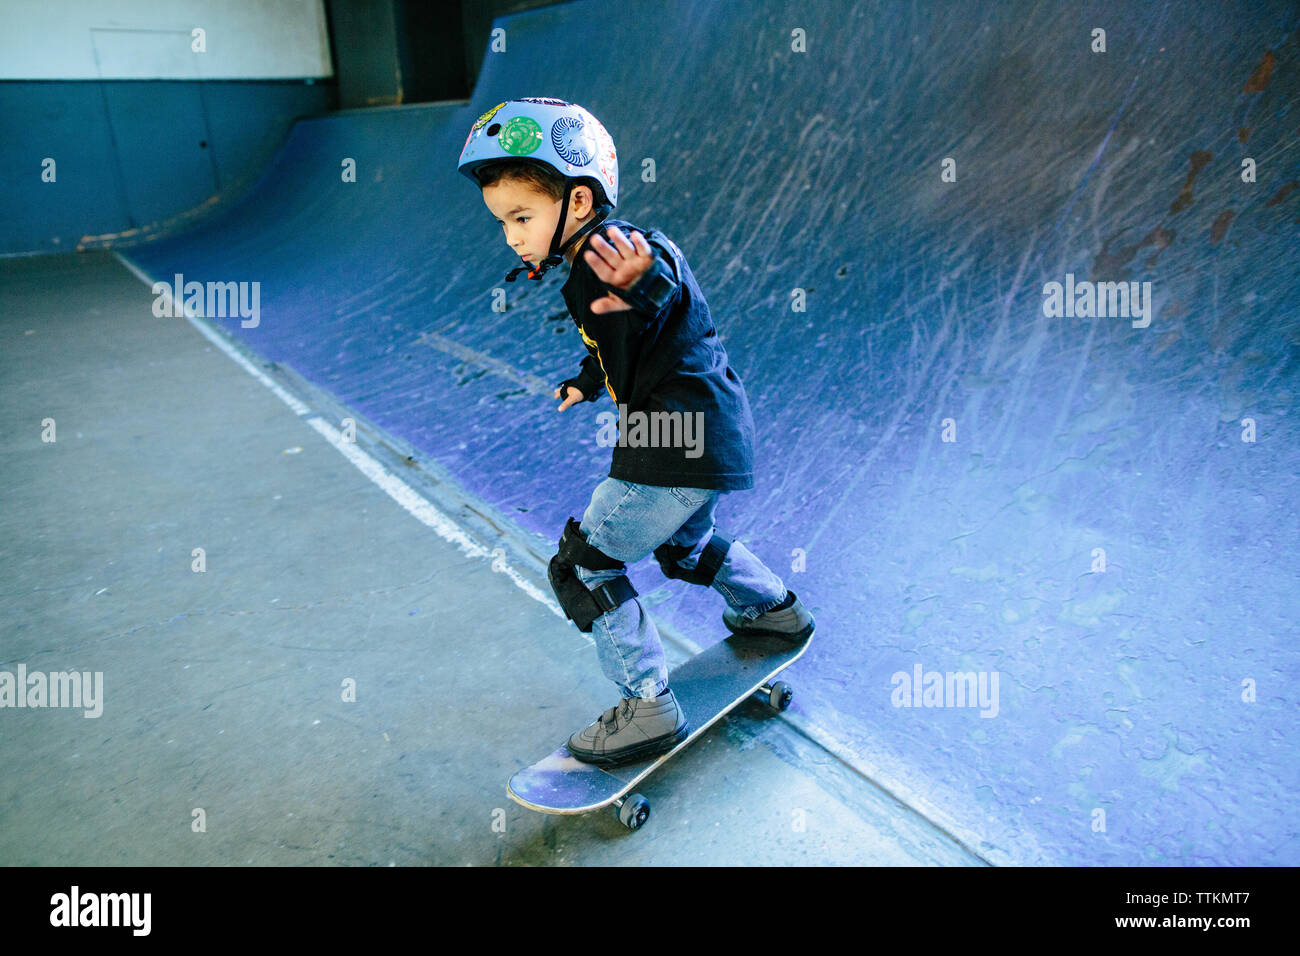 Patinador de skateboard kid abajo una rampa azul Foto de stock